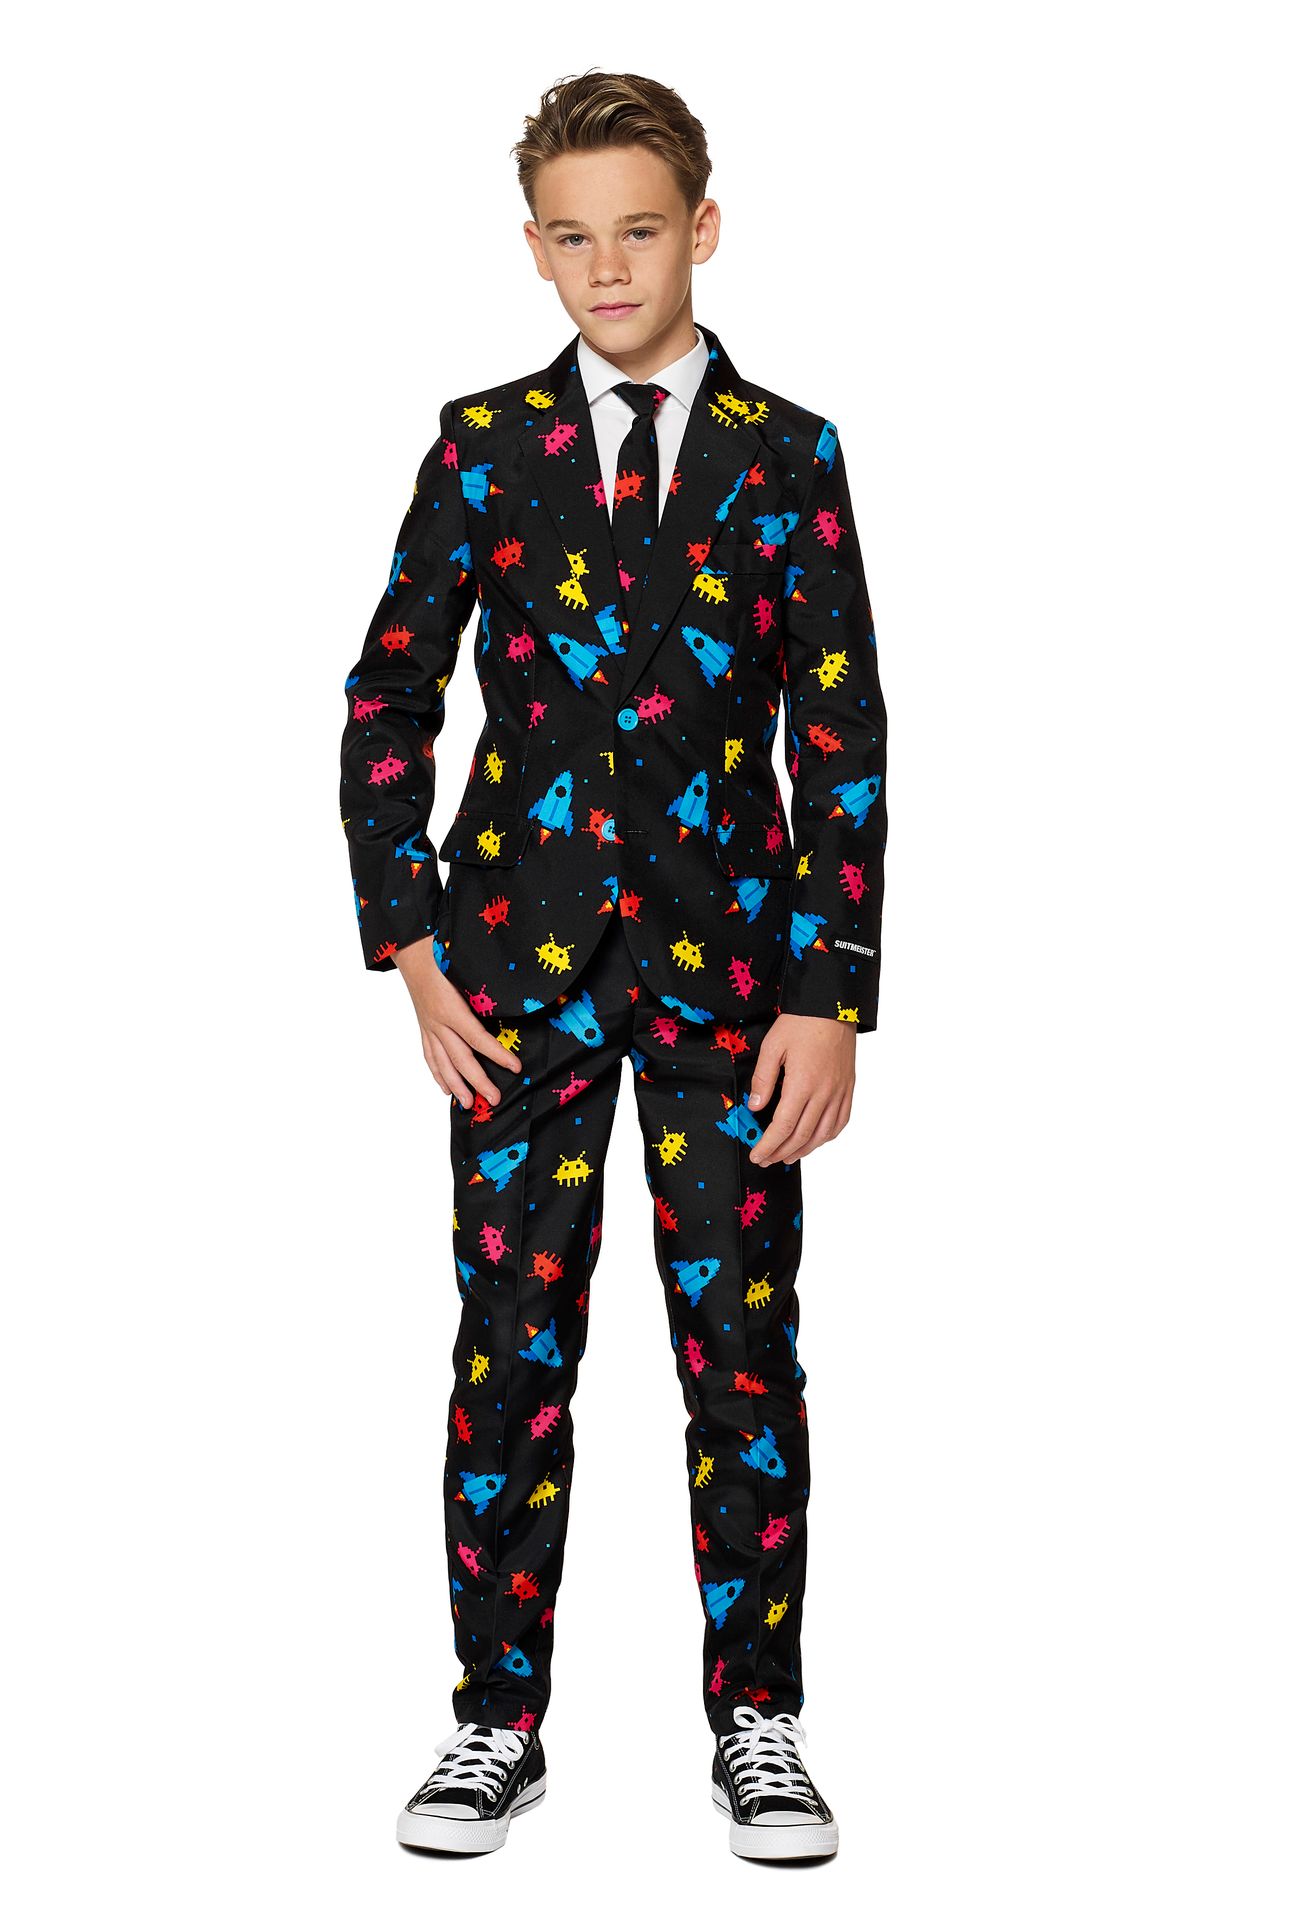 Galaxy computerspel Suitmeister kostuum jongens